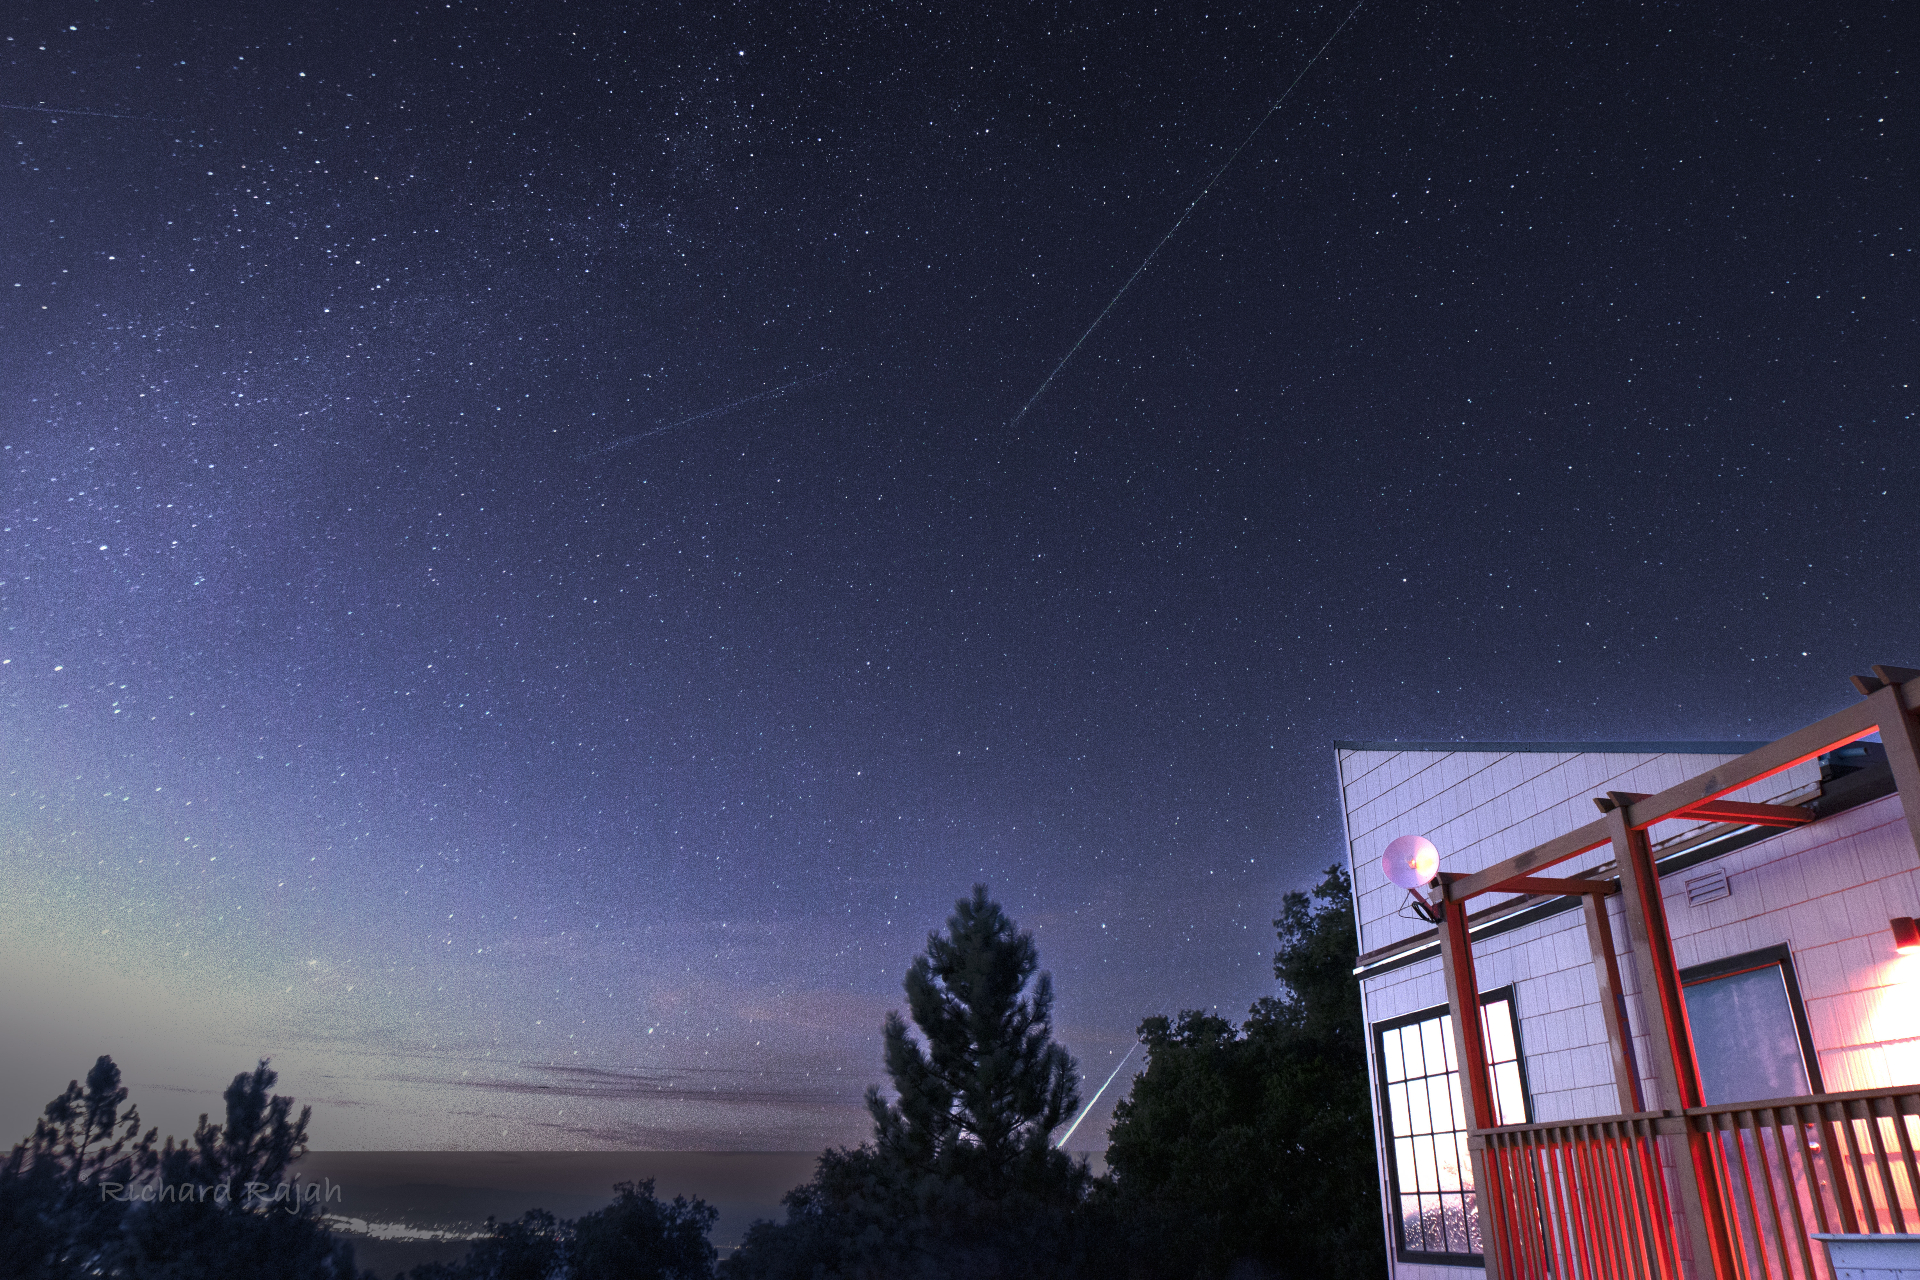 ペルセウス座流星群が空に点在し、画像の下部にある木々の後ろに明るいたいまつの跡が見えます。 画像右側の建物がライトアップされています。